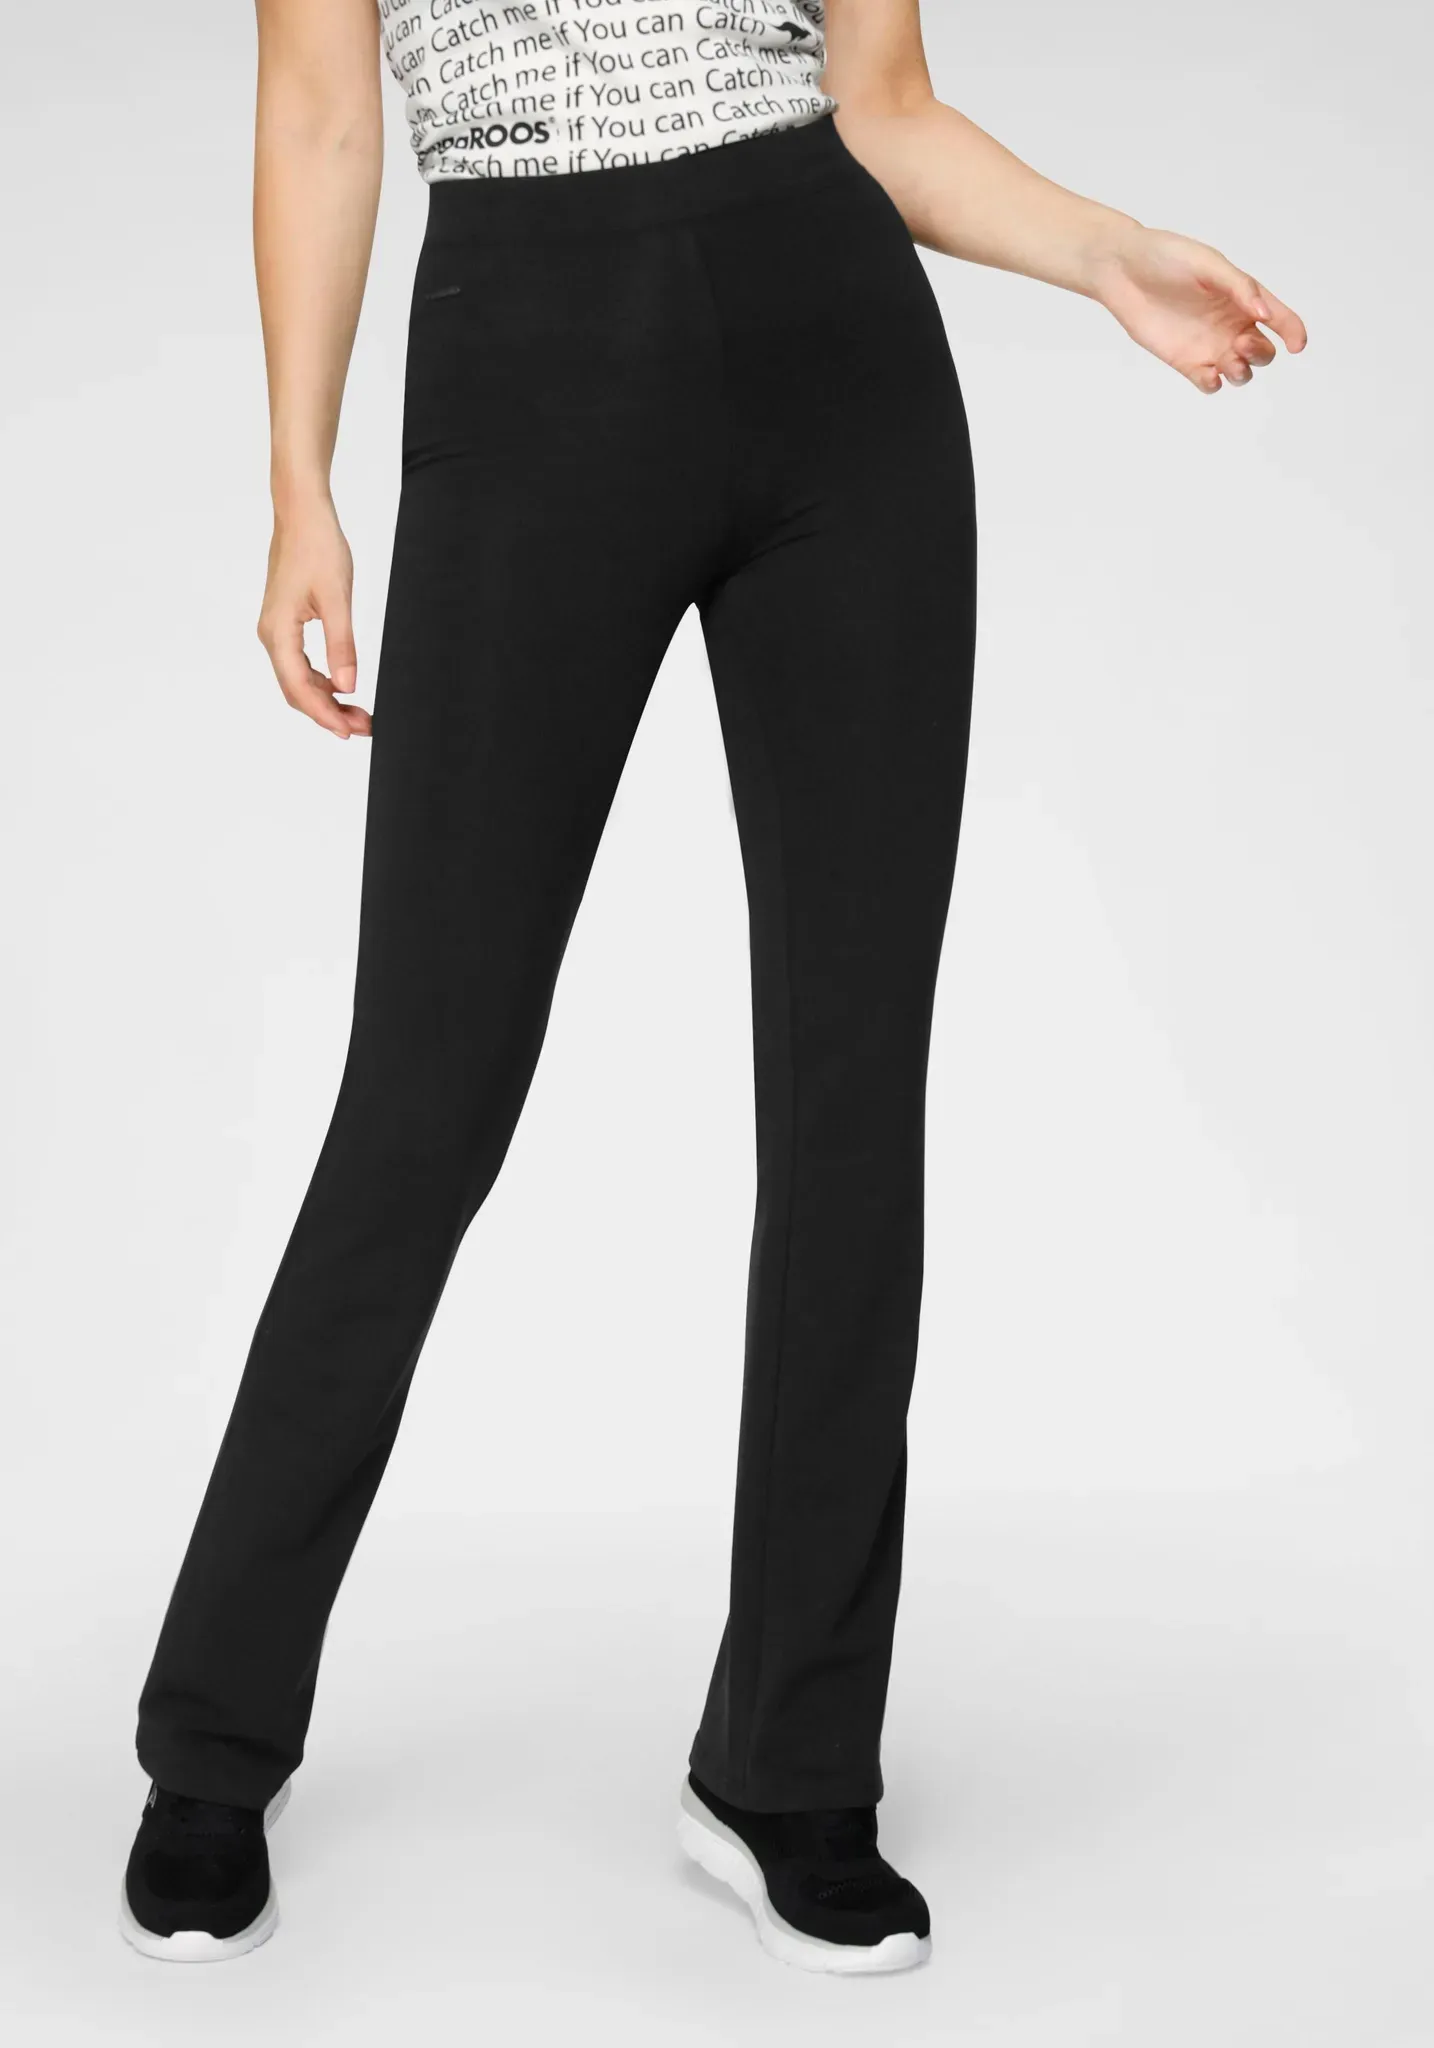 Jazzpants KANGAROOS Gr. 42, N-Gr, schwarz Damen Hosen Ausgestellte mit hohem Stretch-Anteil sitzt wie eine zweite Haut